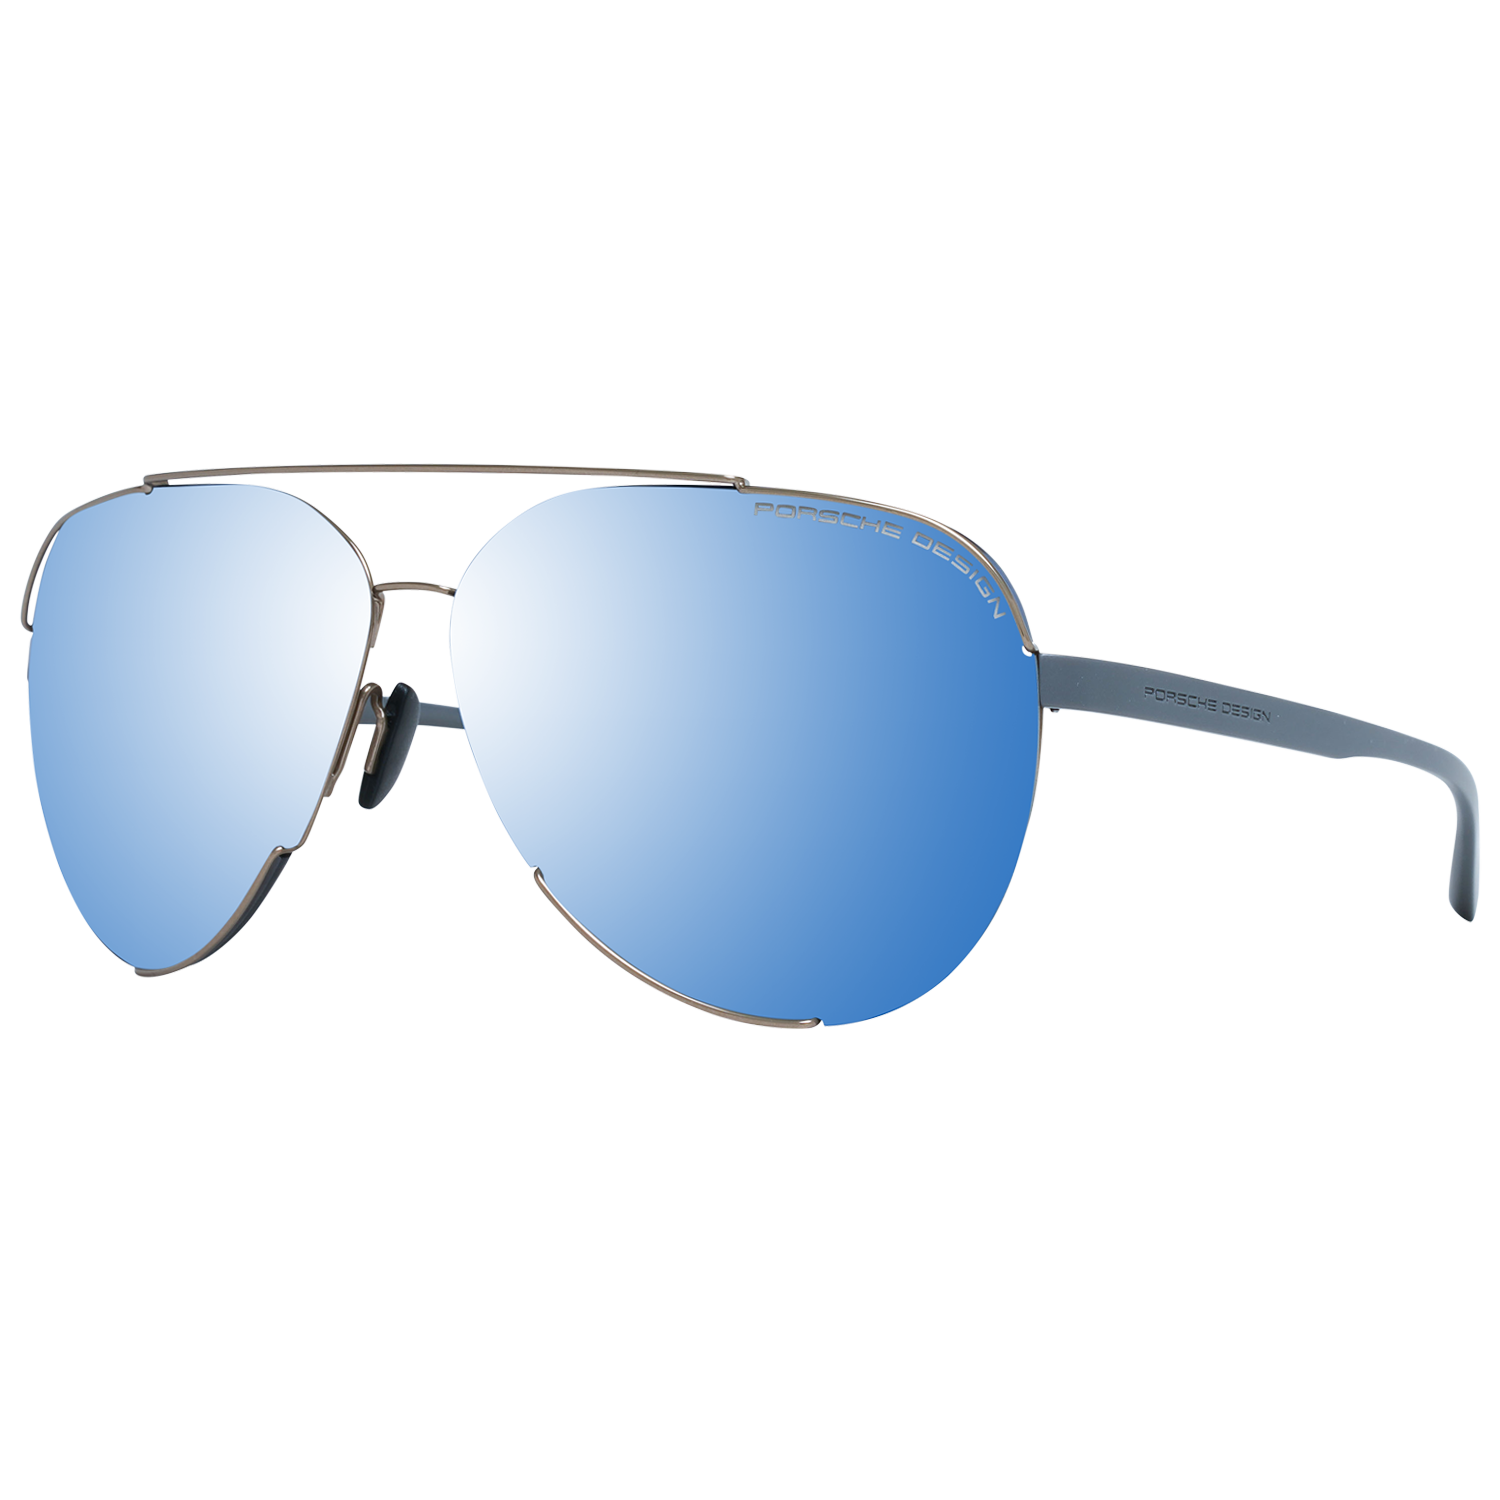 Porsche Design Sunglasses Porsche Design Sunglasses P8682 D 66 Mirrored Eyeglasses Eyewear UK USA Australia 